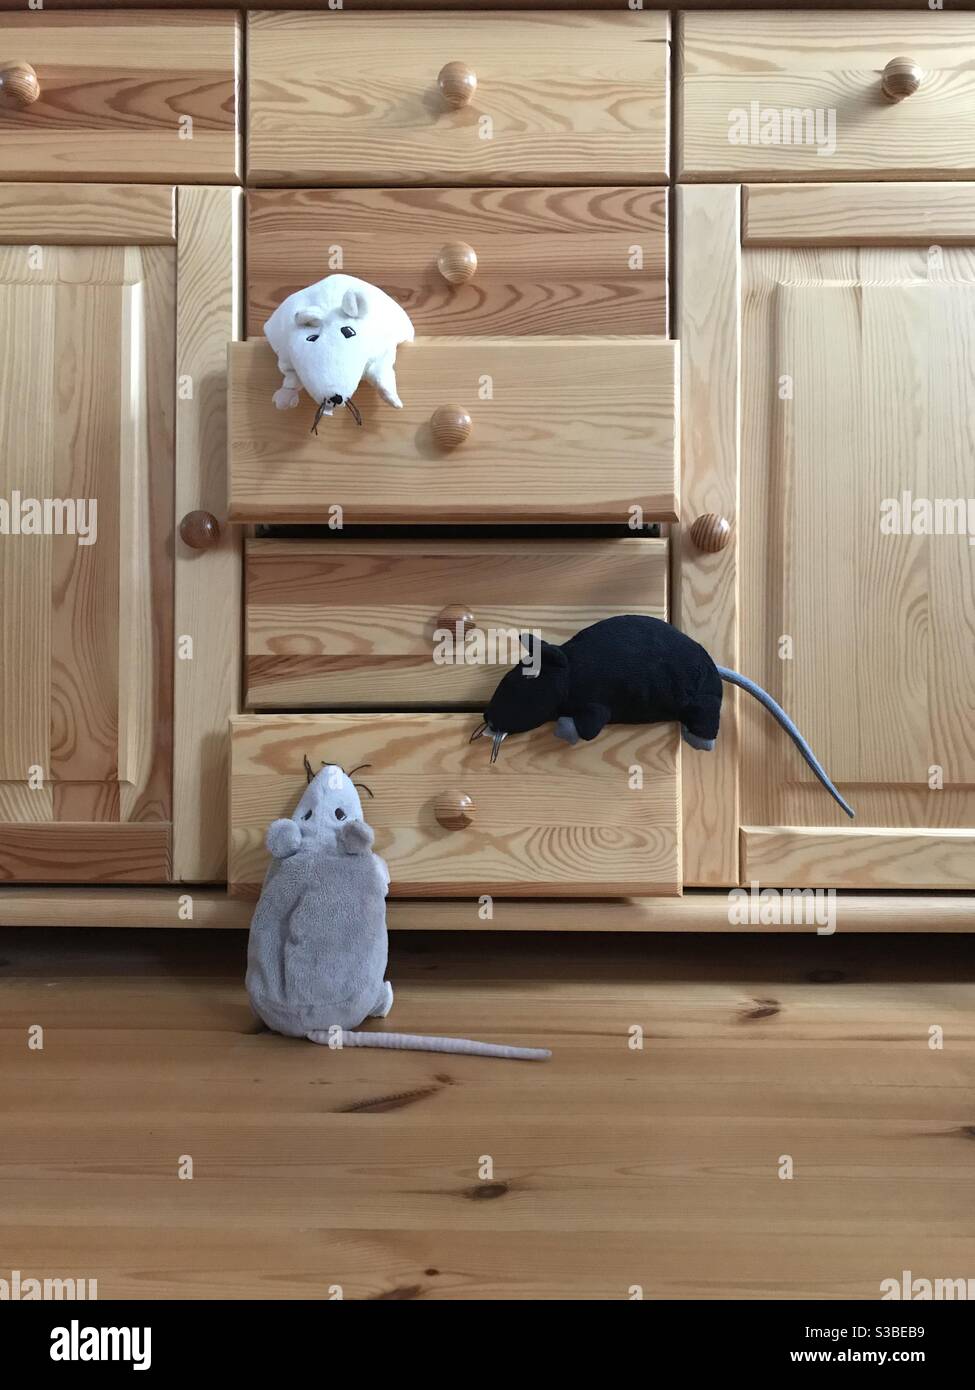 Three Plush Mice in Home Interior Stock Photo